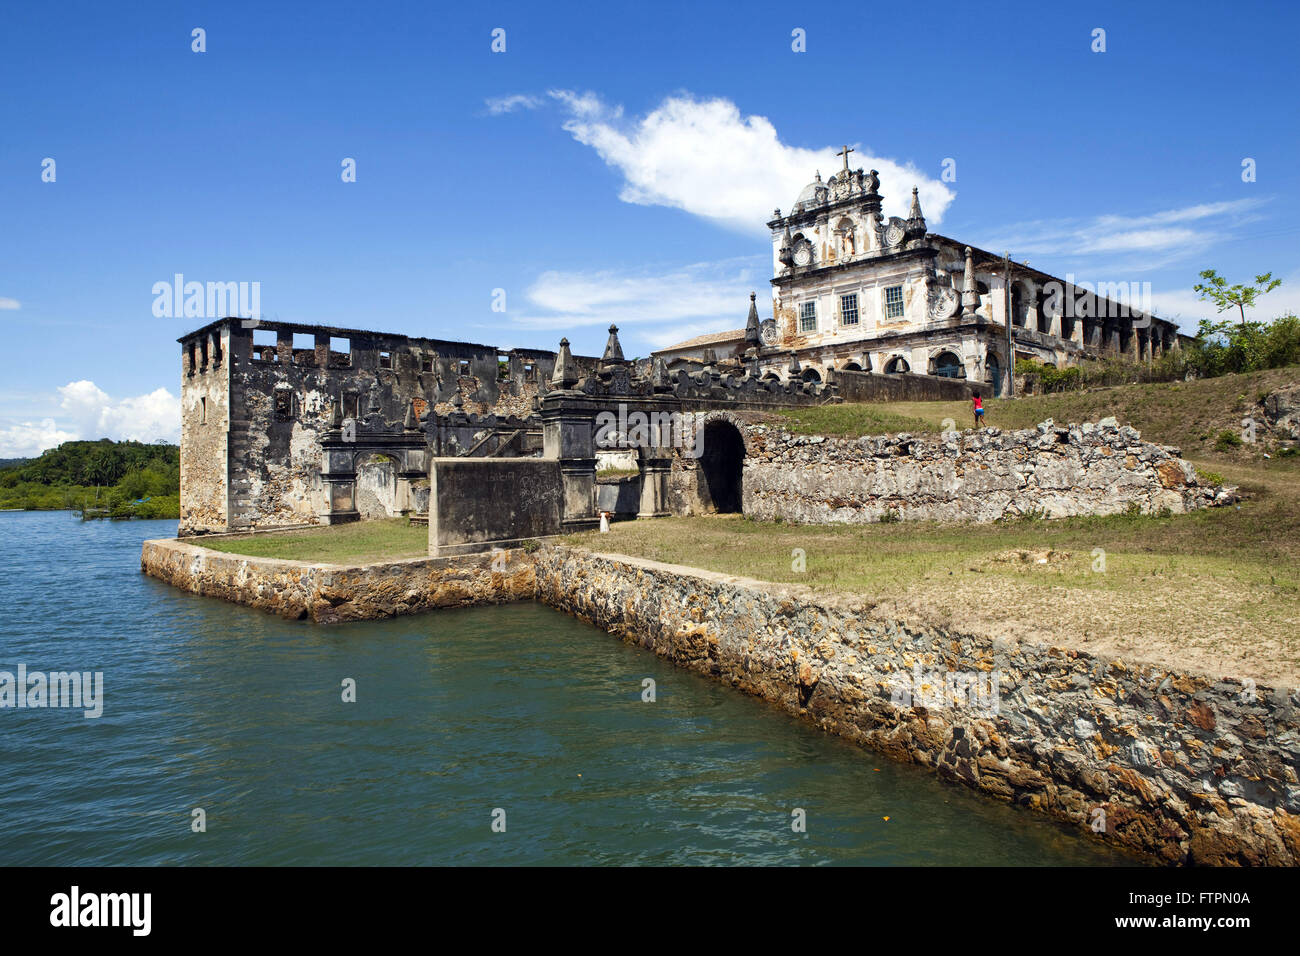 Convento di Santo Antonio do Paraguacu il Reconcavo Baiano XVII sec Foto  stock - Alamy